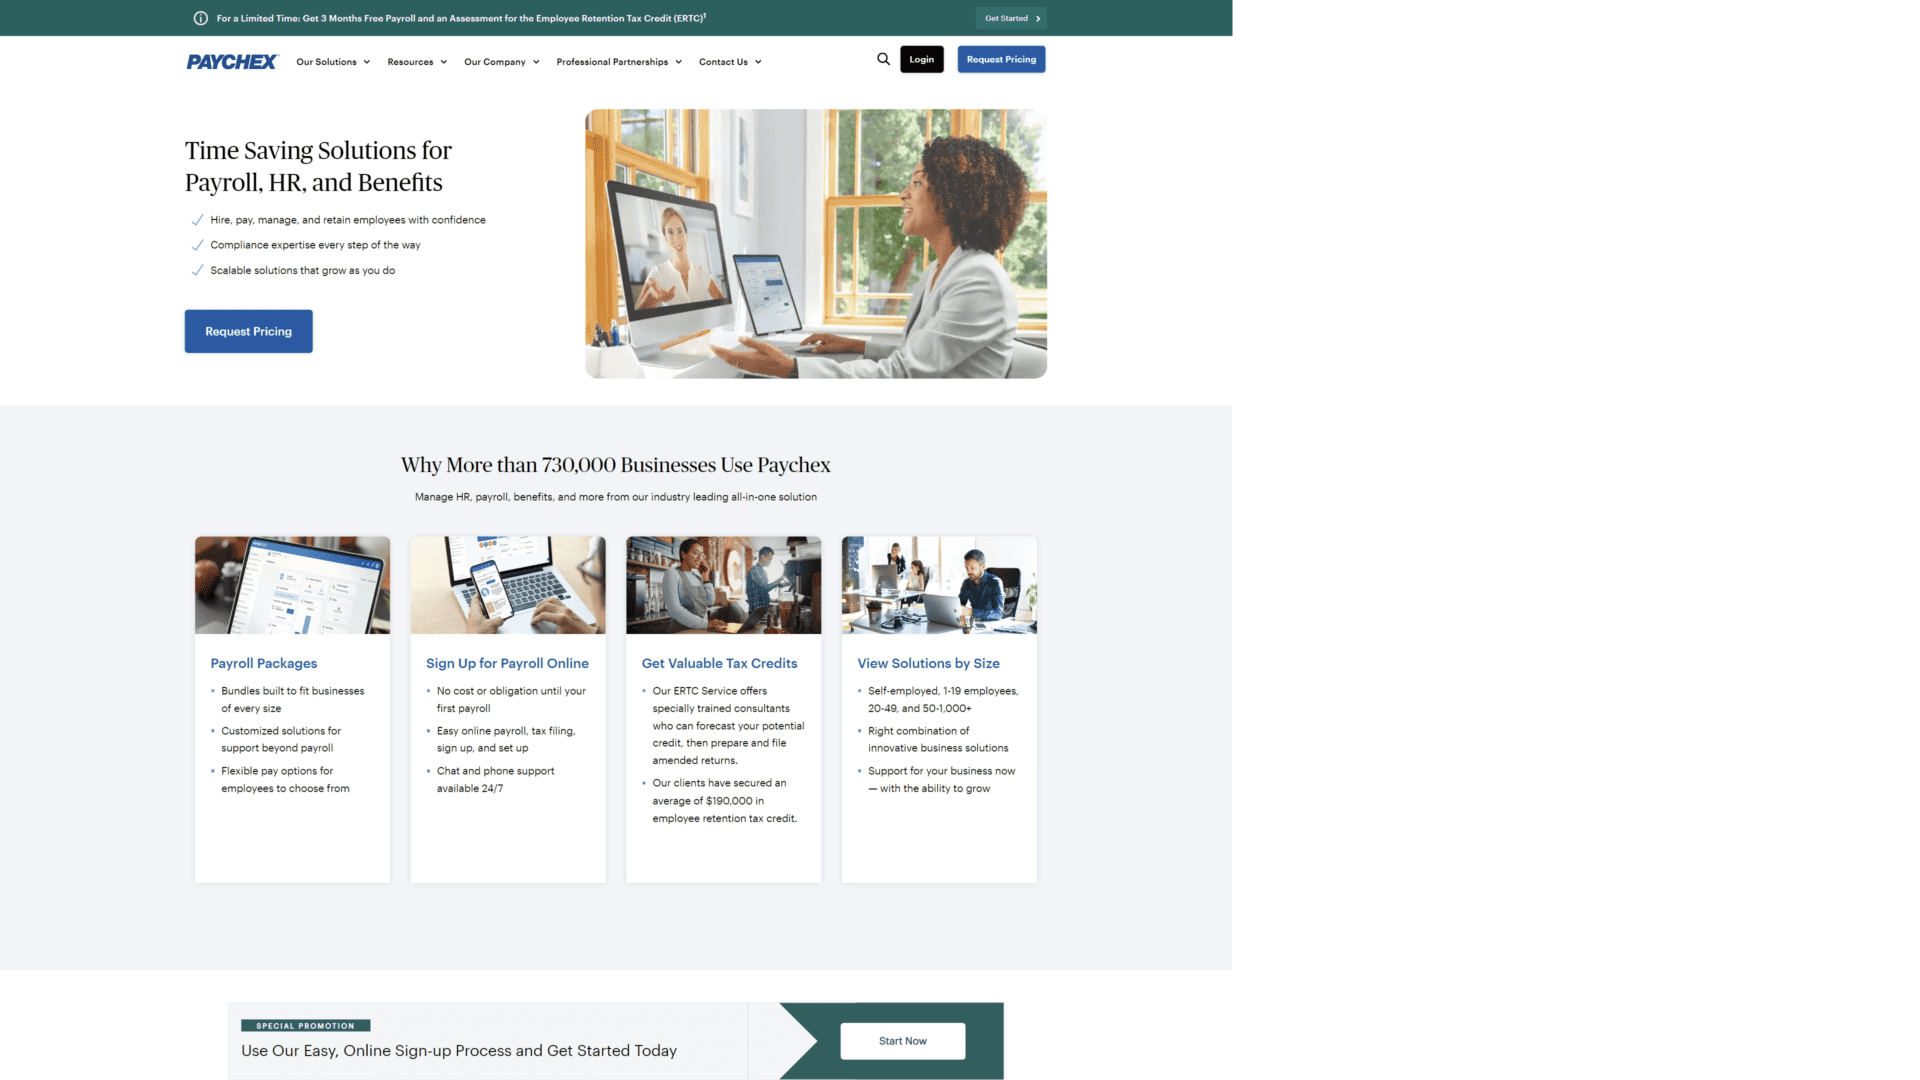 paychex homepage screenshot 1